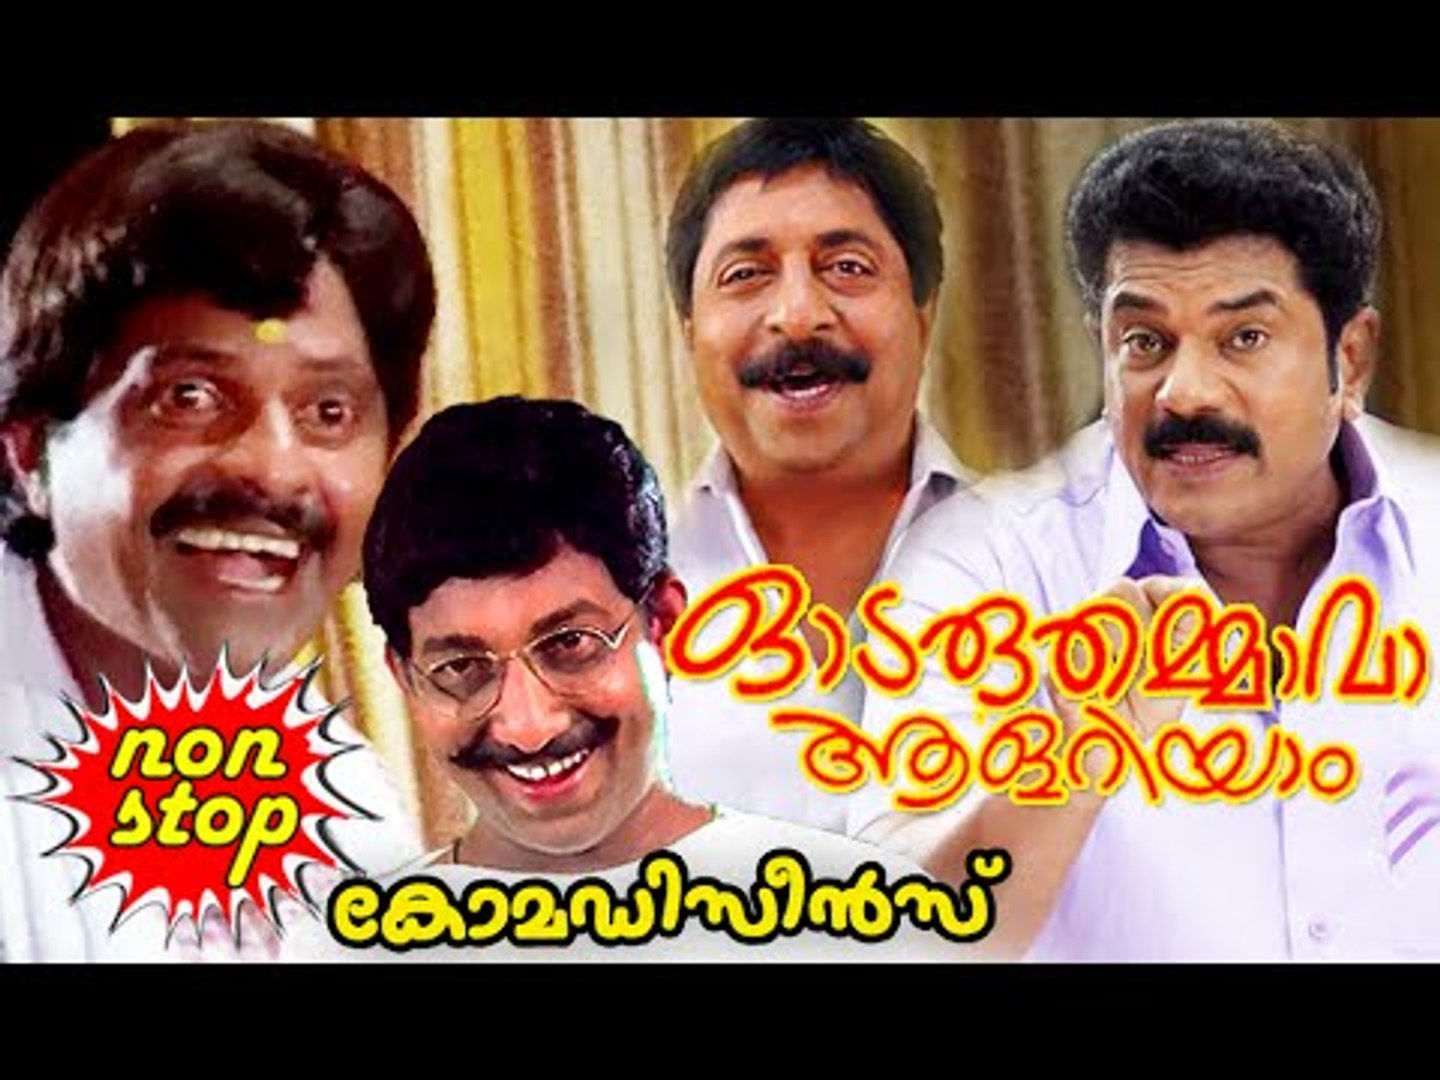 Odaruthammava Aalariyam Comedy Scenes | Malayalam Comedy Movies | Malayalam Comedy Scenes [HD]